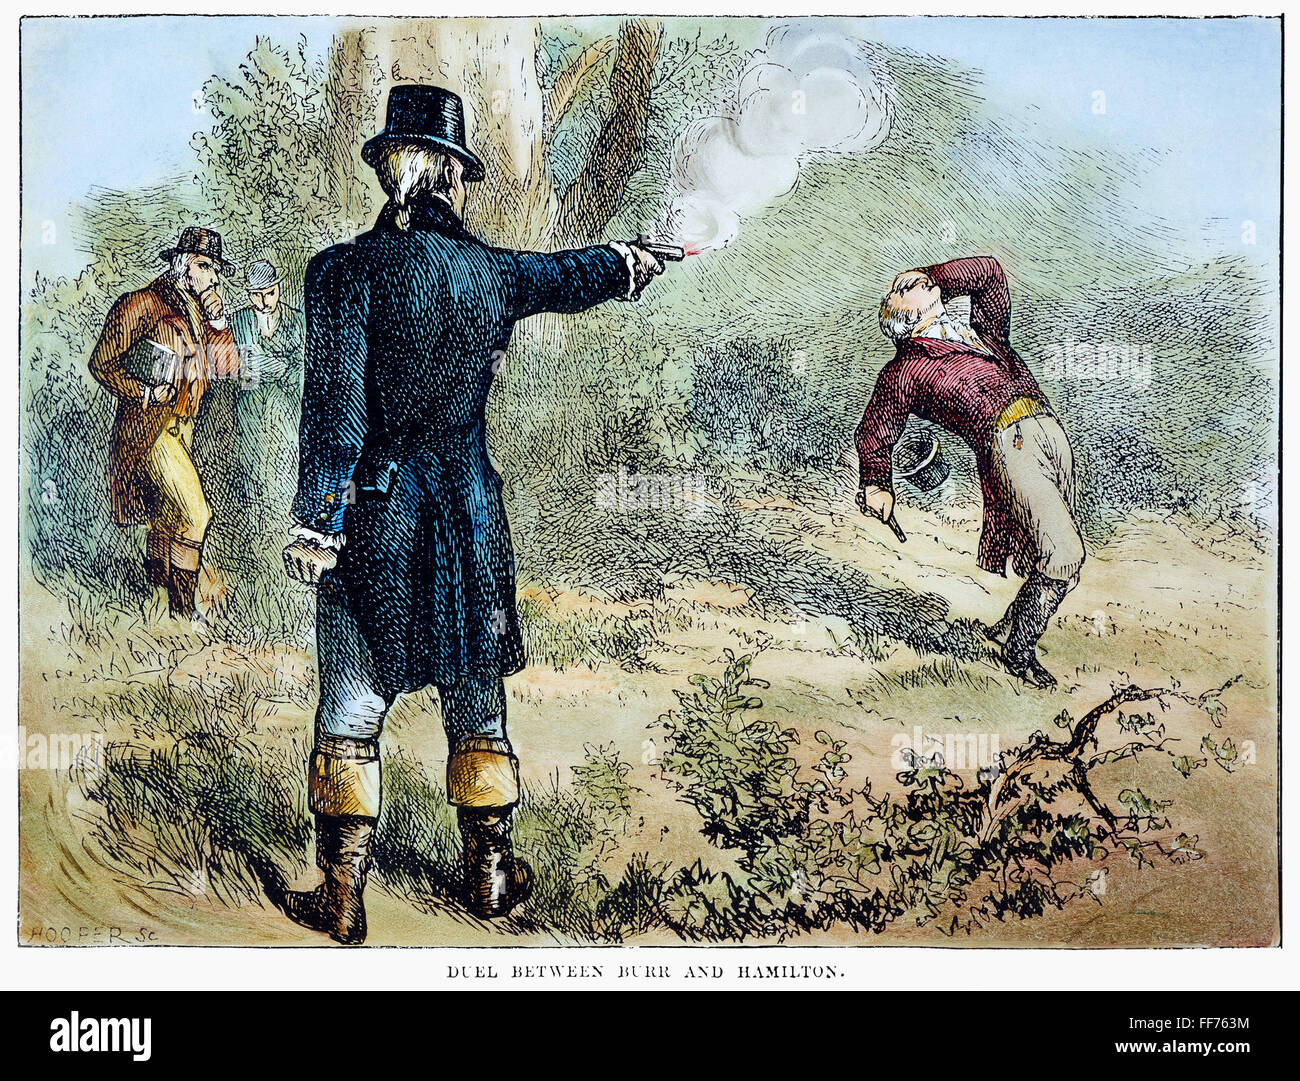 HAMILTON-Burr duelo, 1804. /Nel duelo lucharon entre Alexander Hamilton y Aaron Burr en Weehawken, Nueva Jersey, el 11 de julio de 1804. El grabado en madera, del siglo XIX. Foto de stock